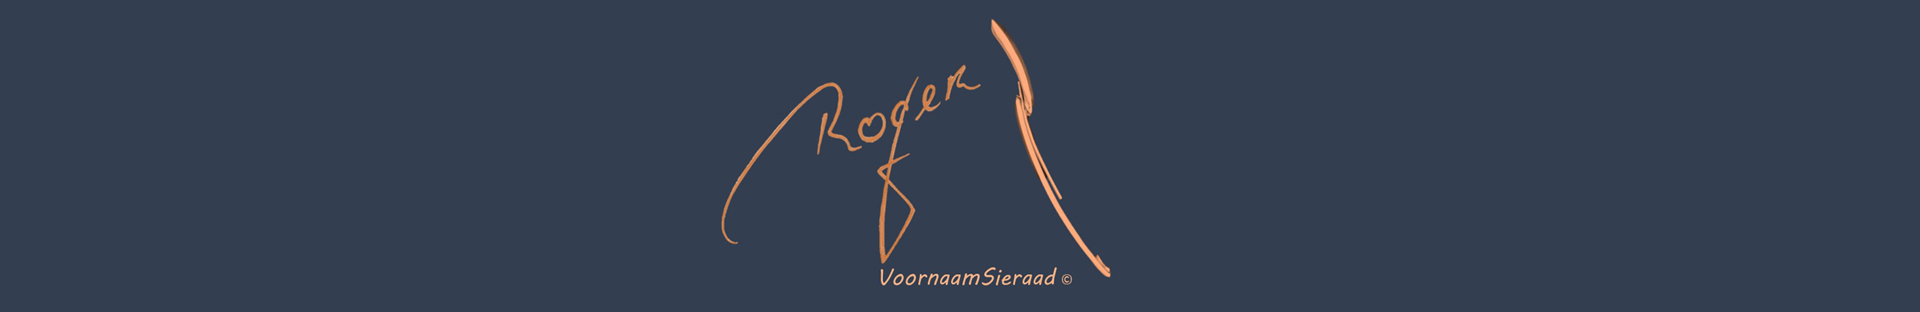 Roger Veldman